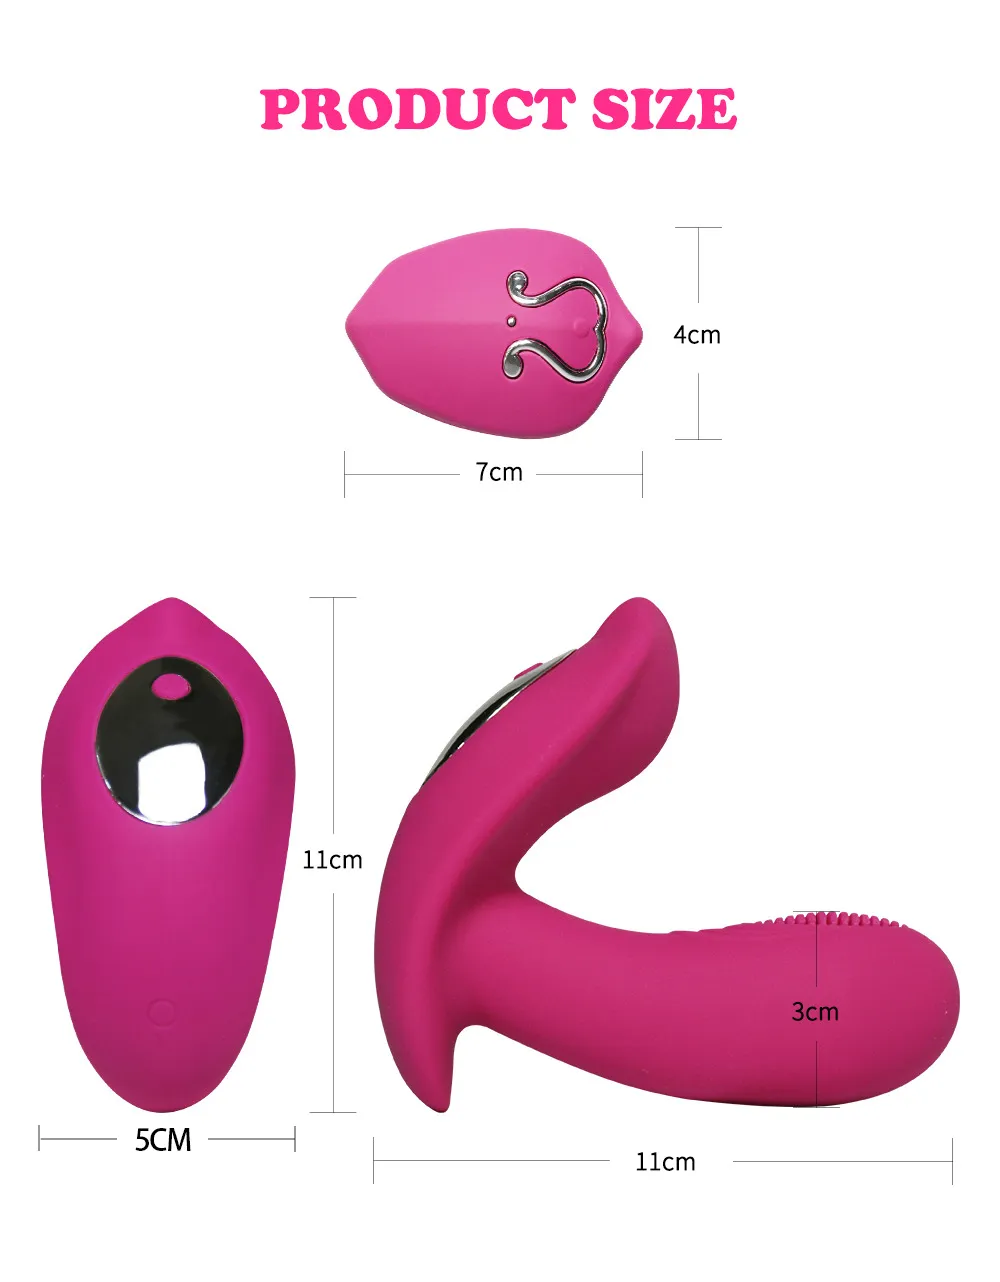 リモートコントロールウェアラブルパンティー女性用ディルドバイブレーター10モードGスポット刺激装置クリトリス膣マッサージャーセクシーなおもちゃ